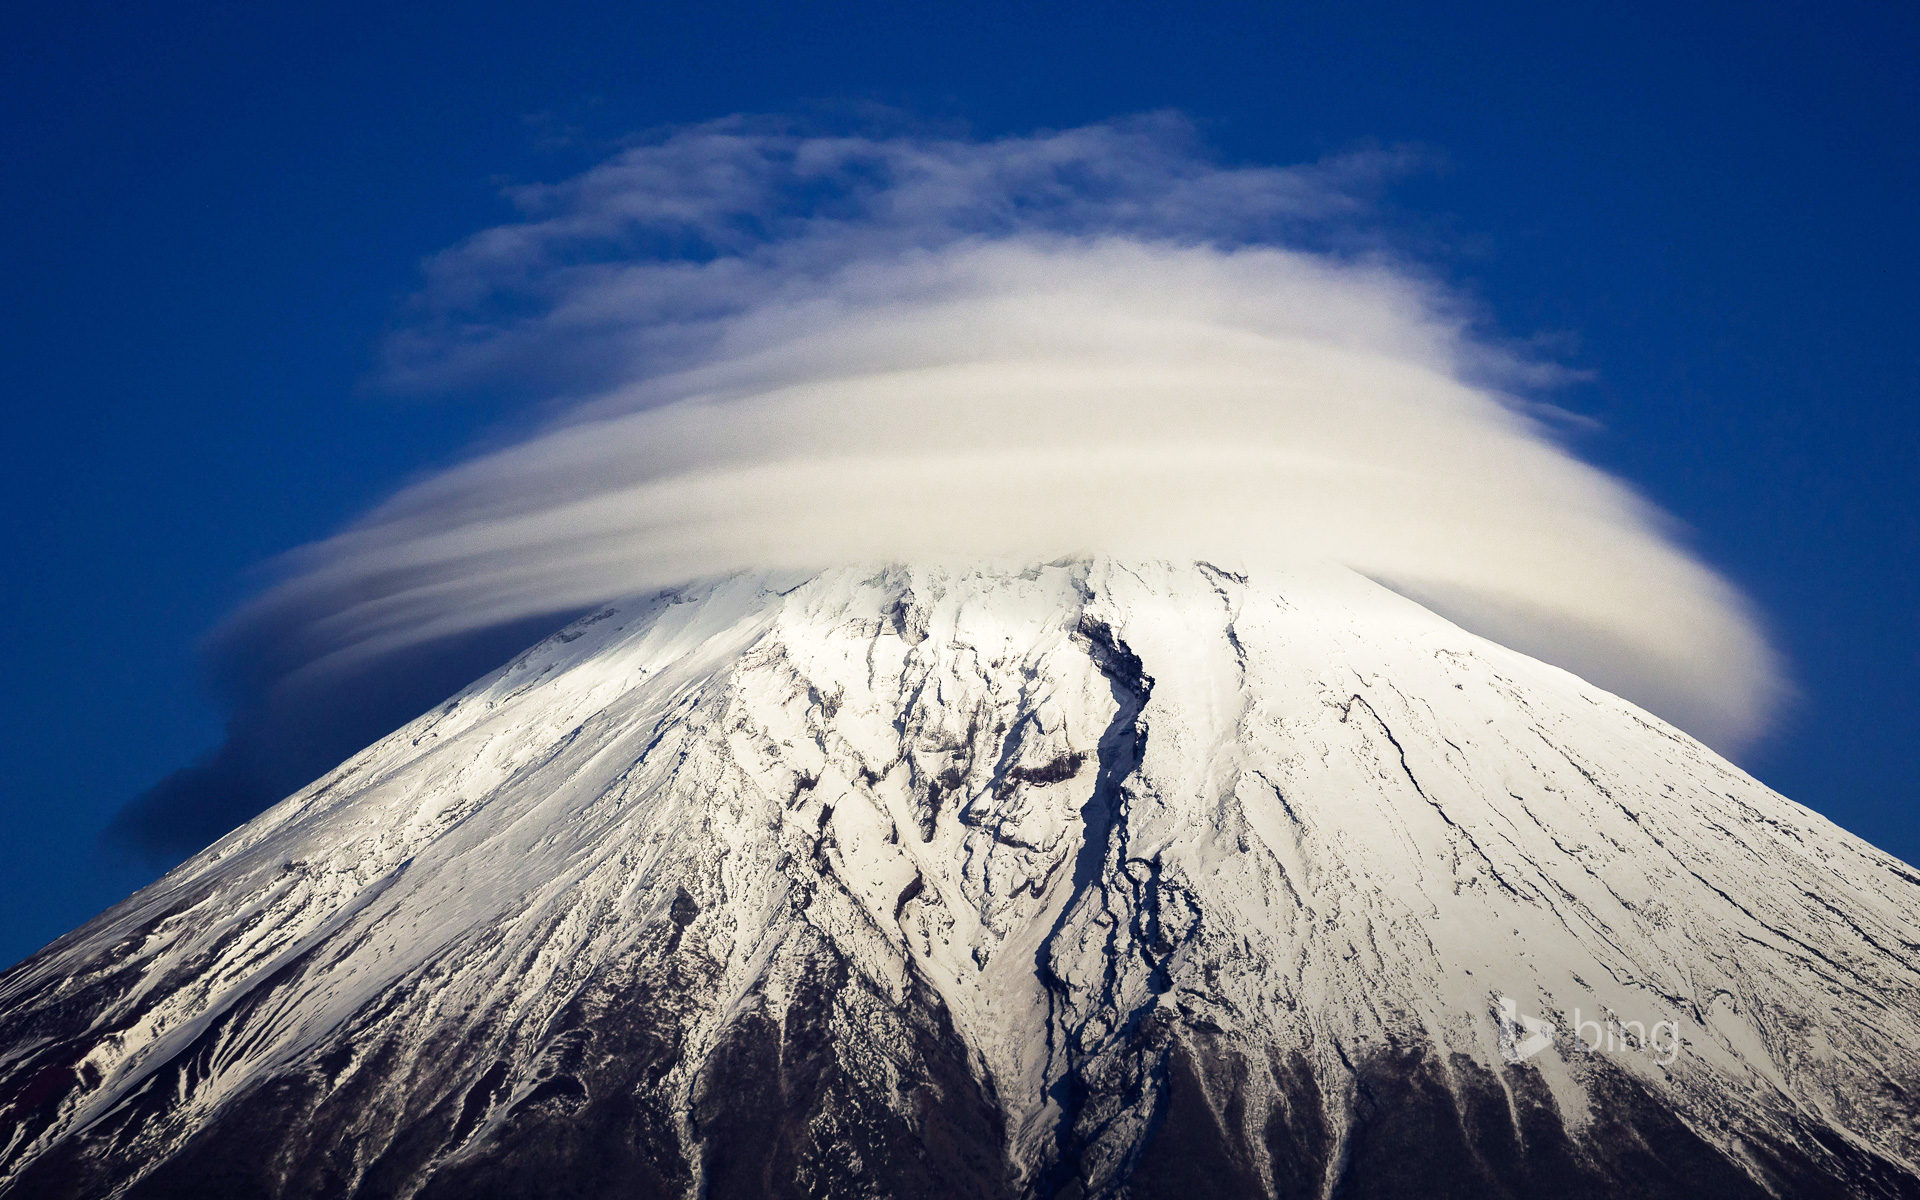 Circular cloud around top of Mount Fuji, Japan